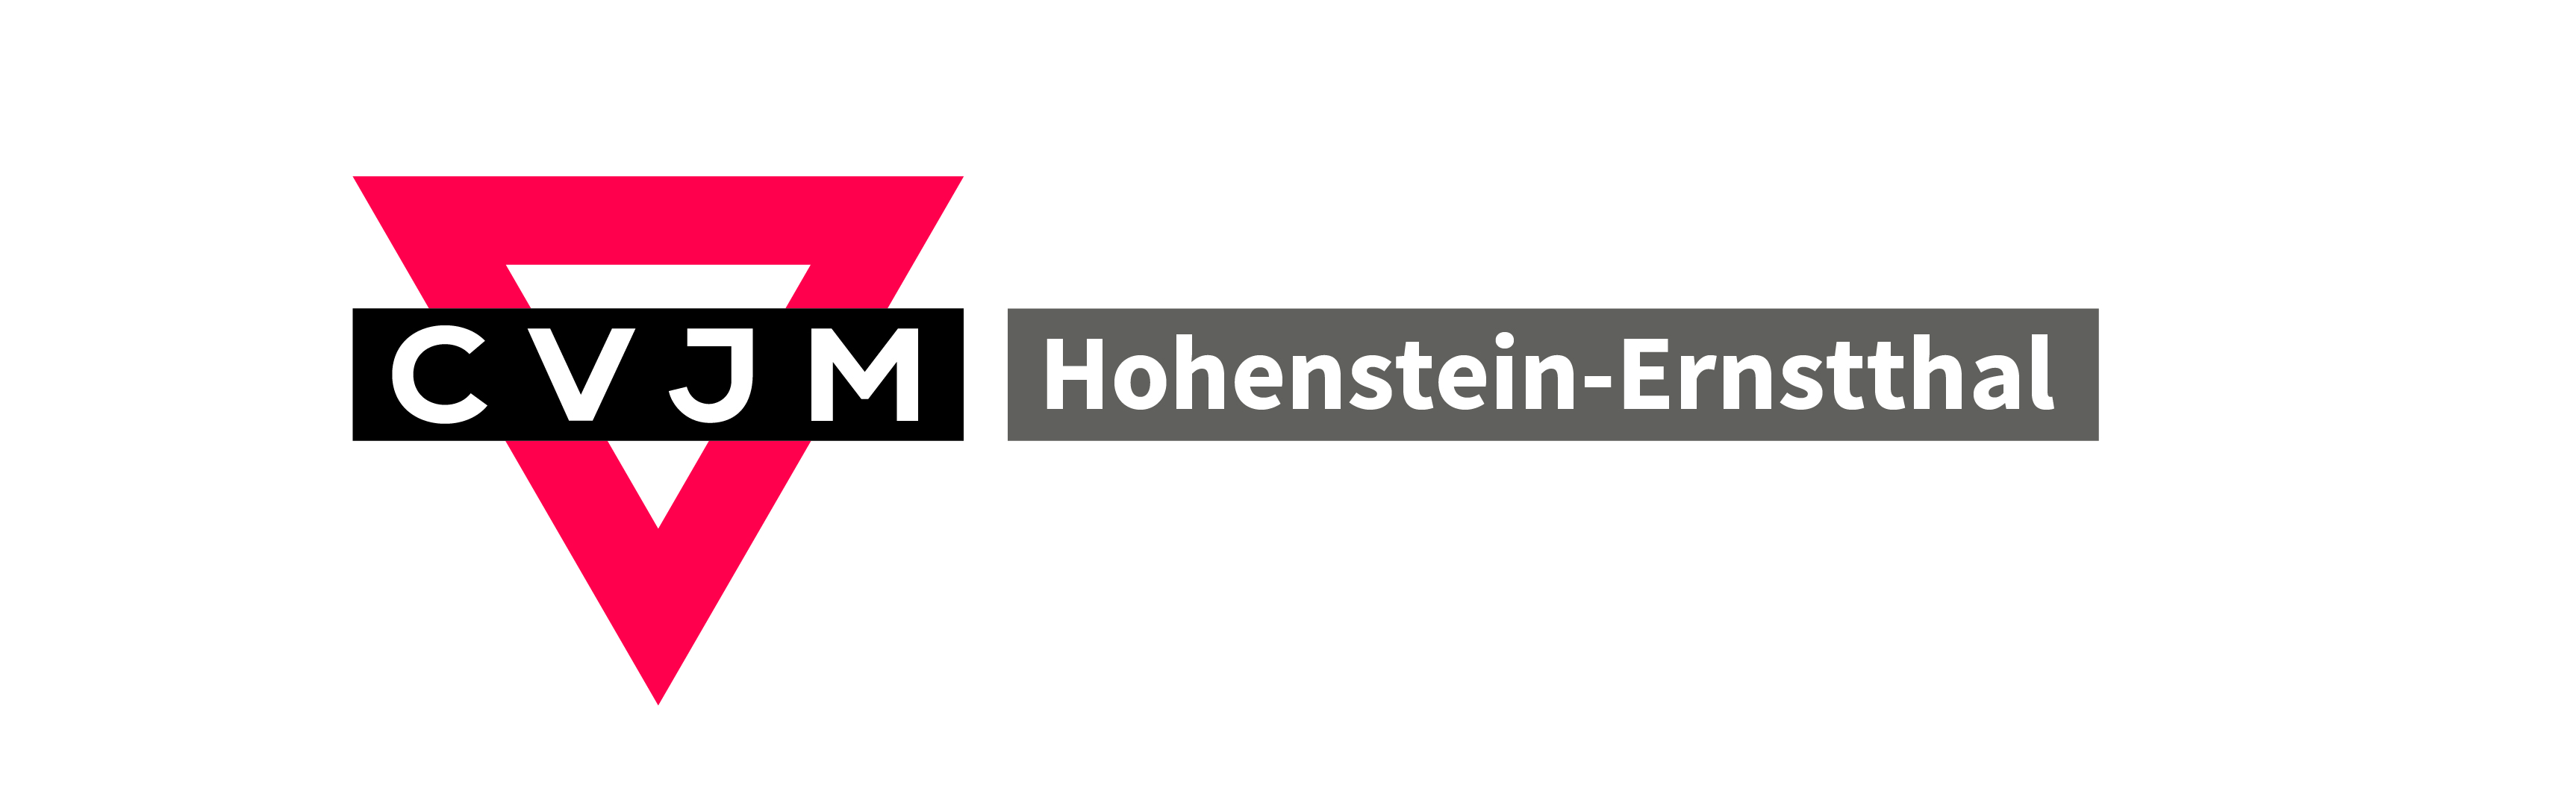 CVJM Hohenstein-Ernstthal e.V.